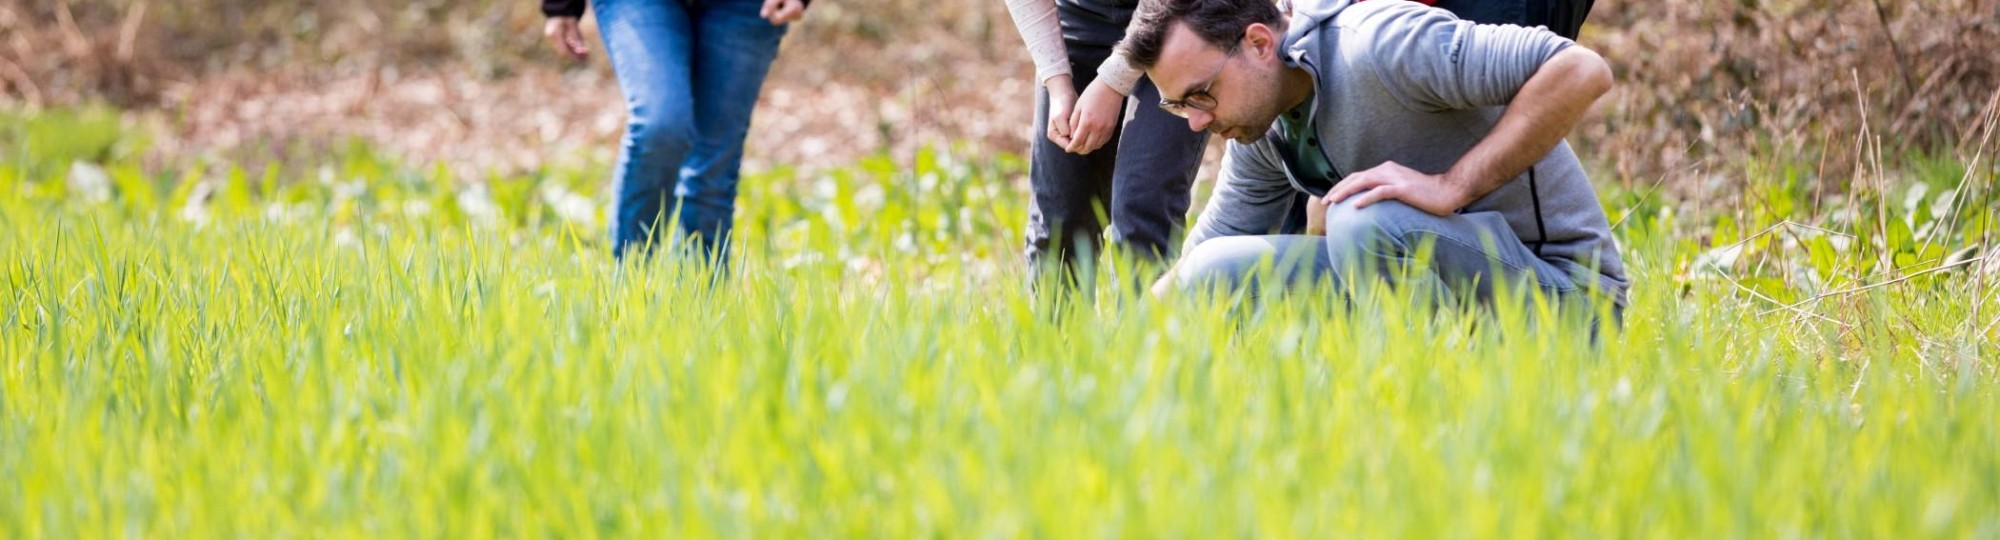 Biologie studenten en docenten kijken nieuwsgierig op het gras